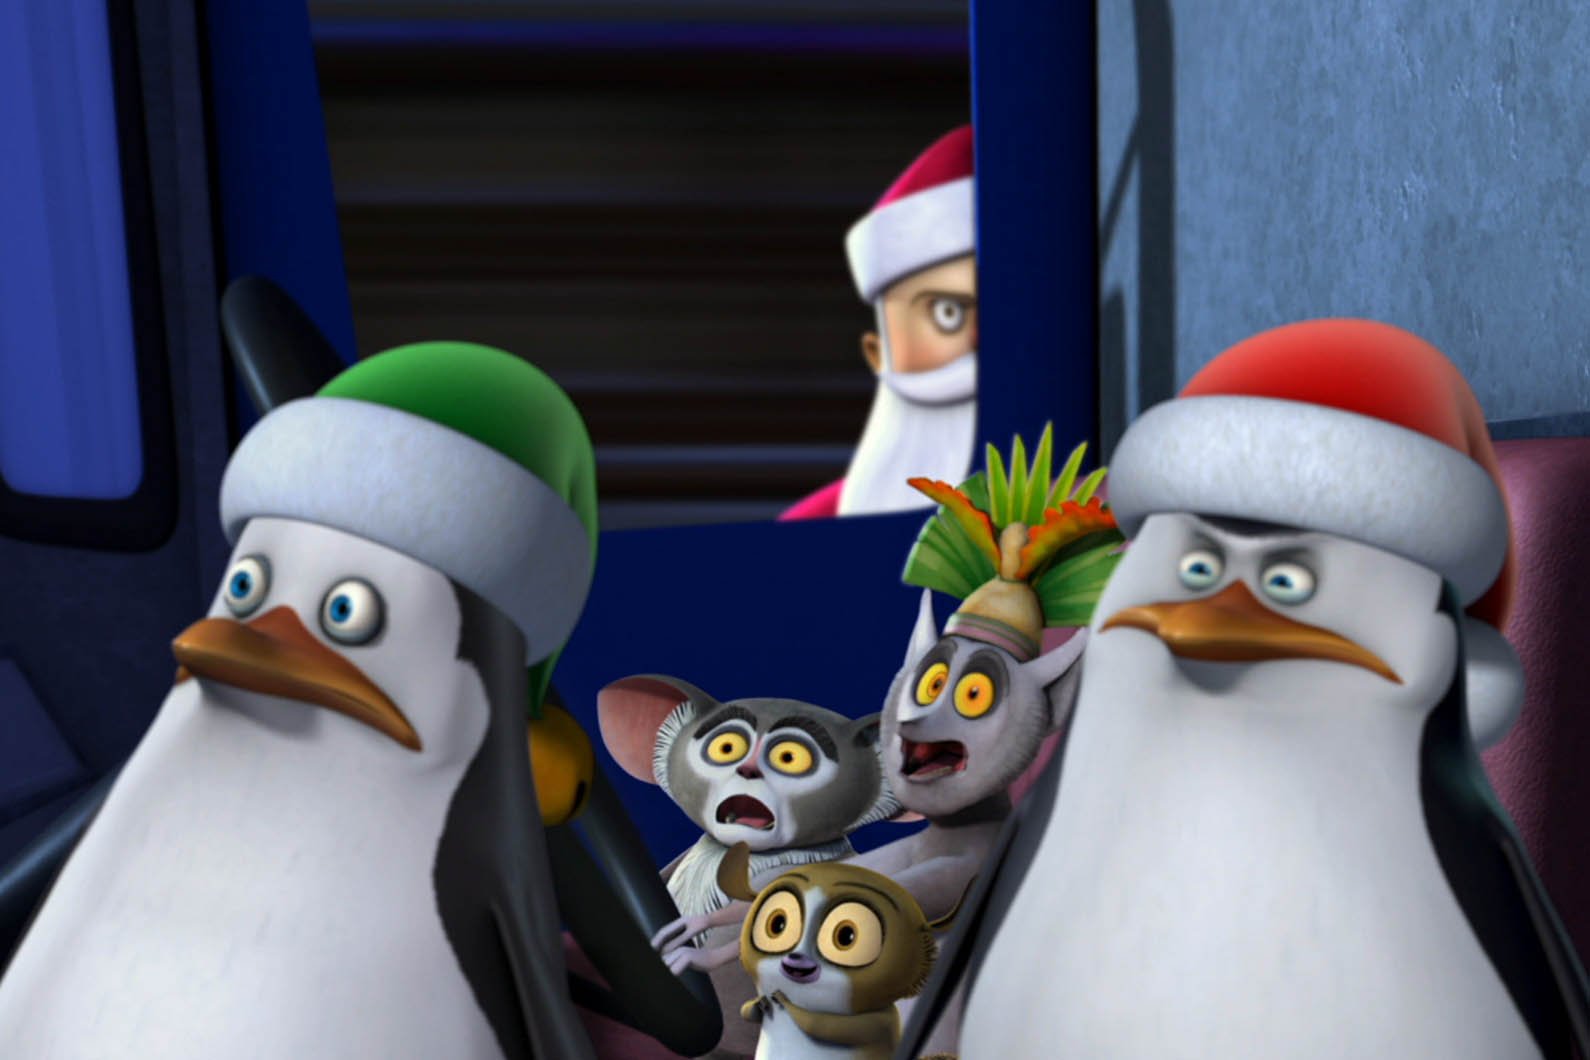 ディズニー チャンネル公式 Twitter પર 今夜時からは ザ ペンギンズ From マダガスカル のクリスマスエピソードをお届け 子どもたちを楽しませるためのイベント キッズマス を企画した隊長 無事に実現できるか